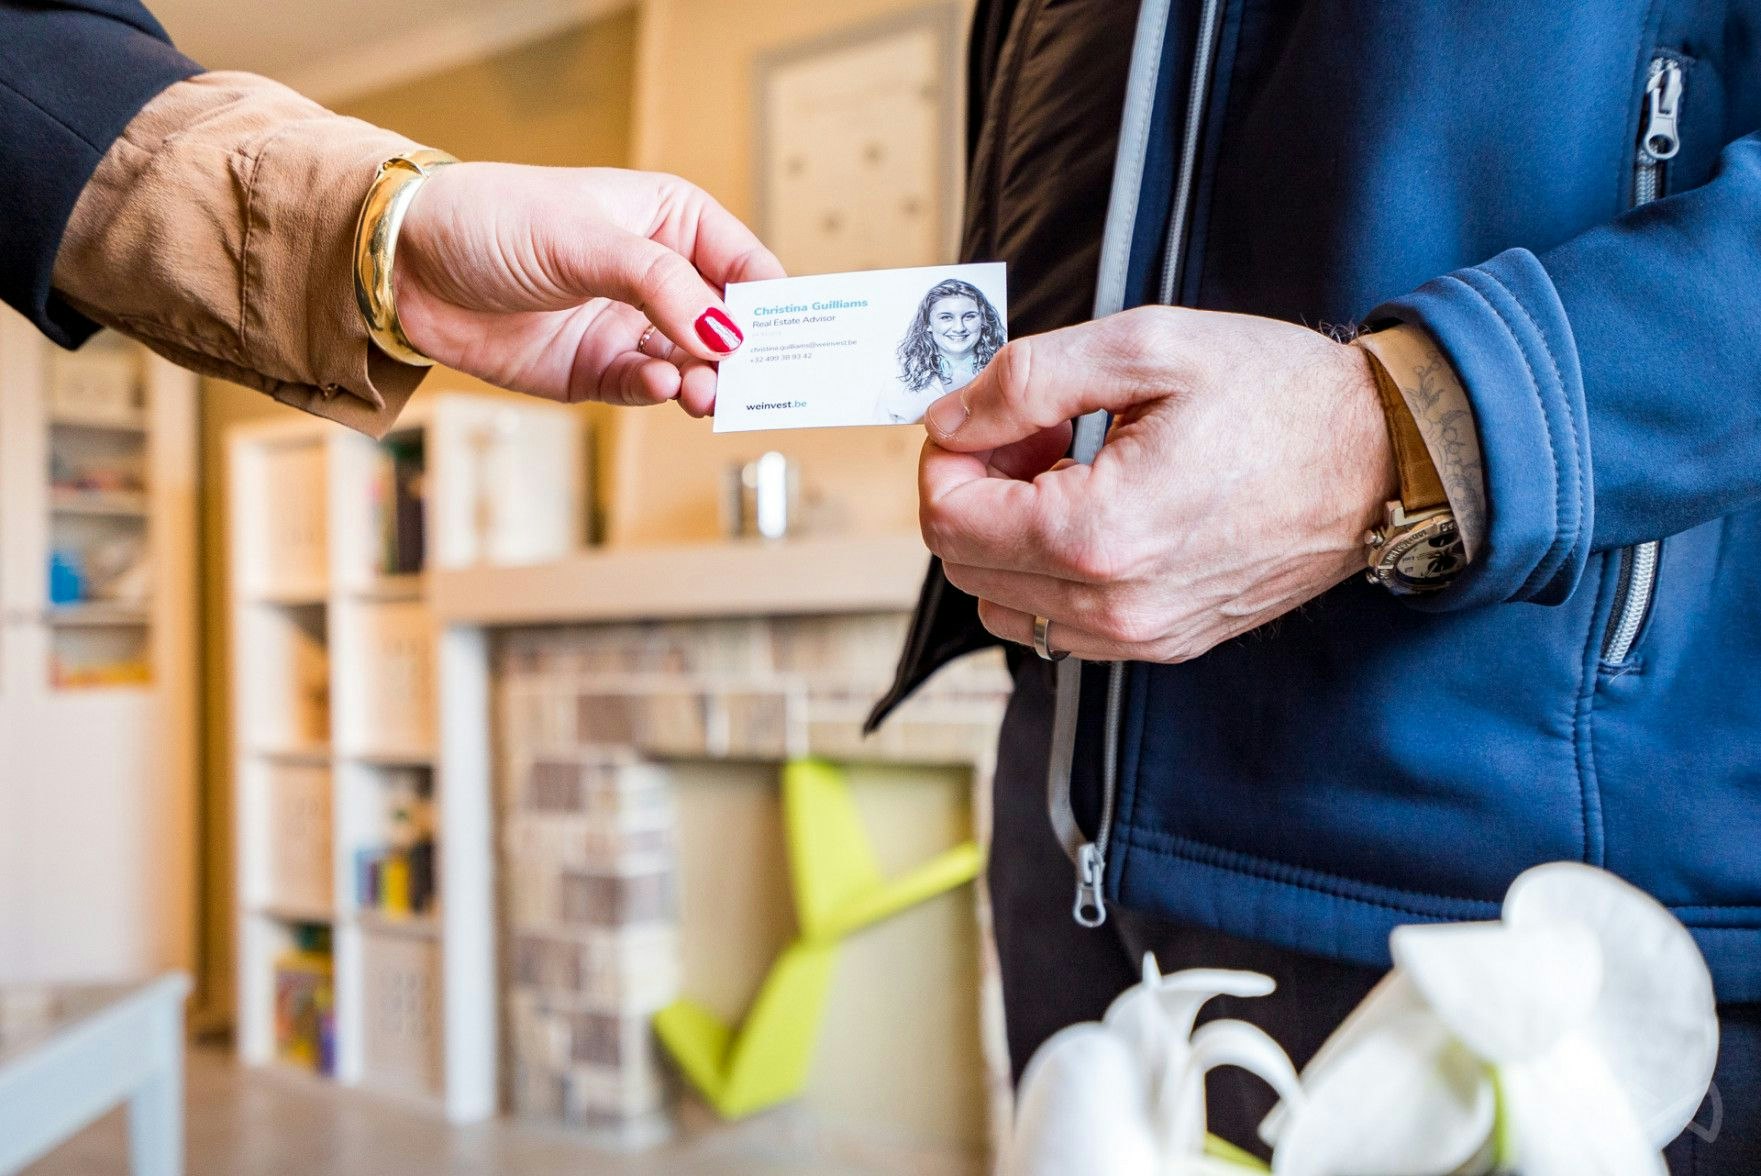 We Invest makelaar geeft zijn visitekaartje aan een potentiële verkoper tijdens een bezoek.